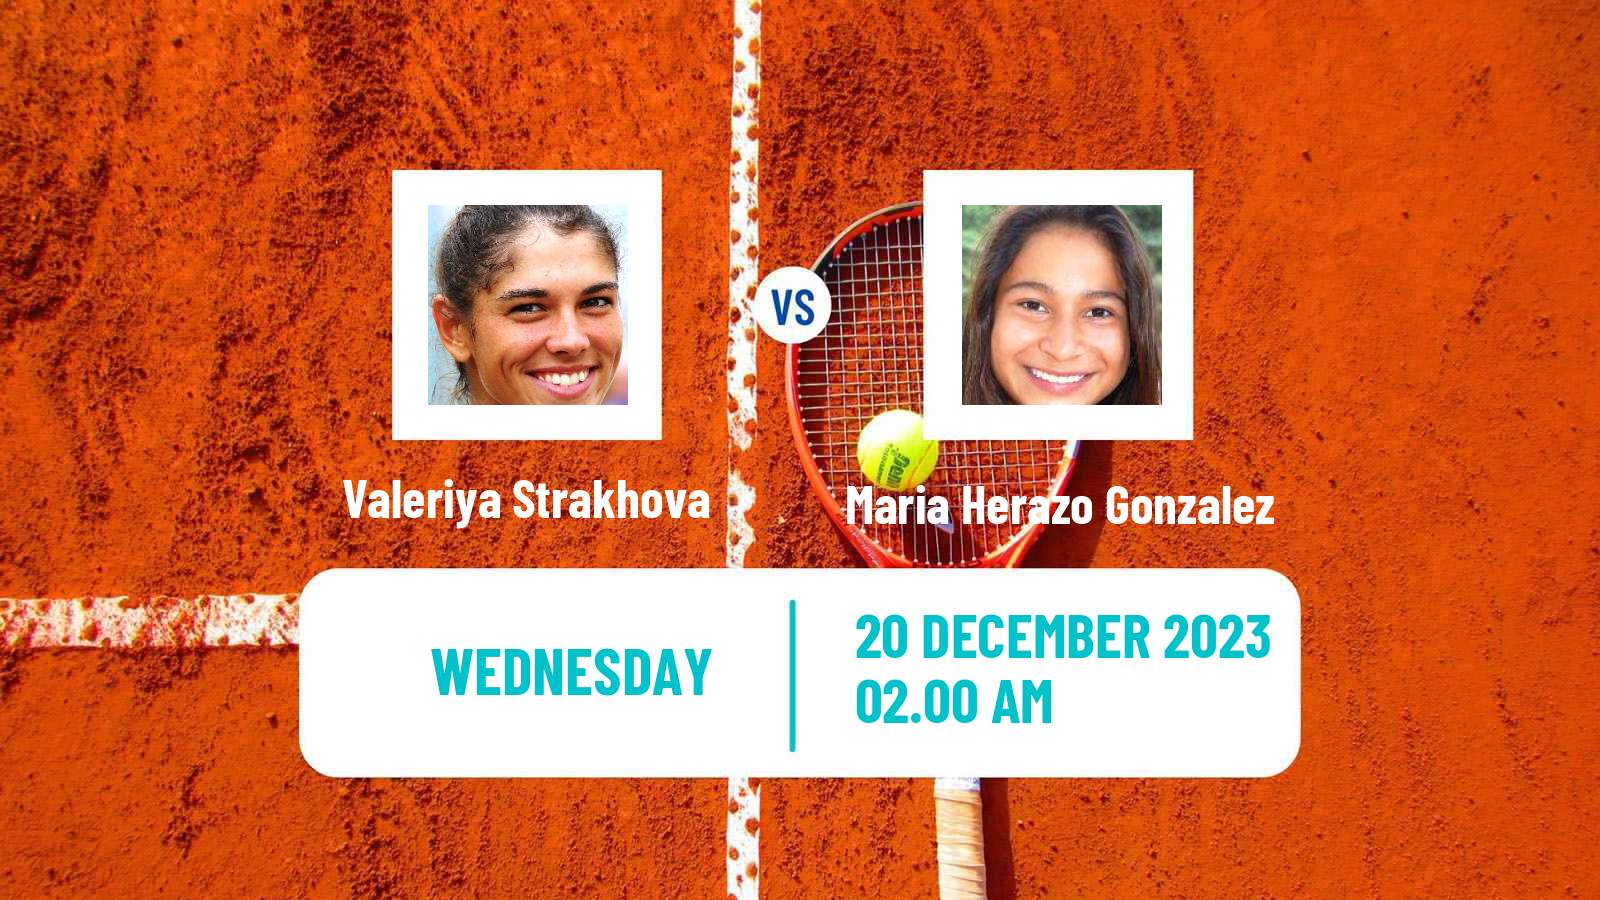 Tennis ITF W25 Nairobi 2 Women Valeriya Strakhova - Maria Herazo Gonzalez